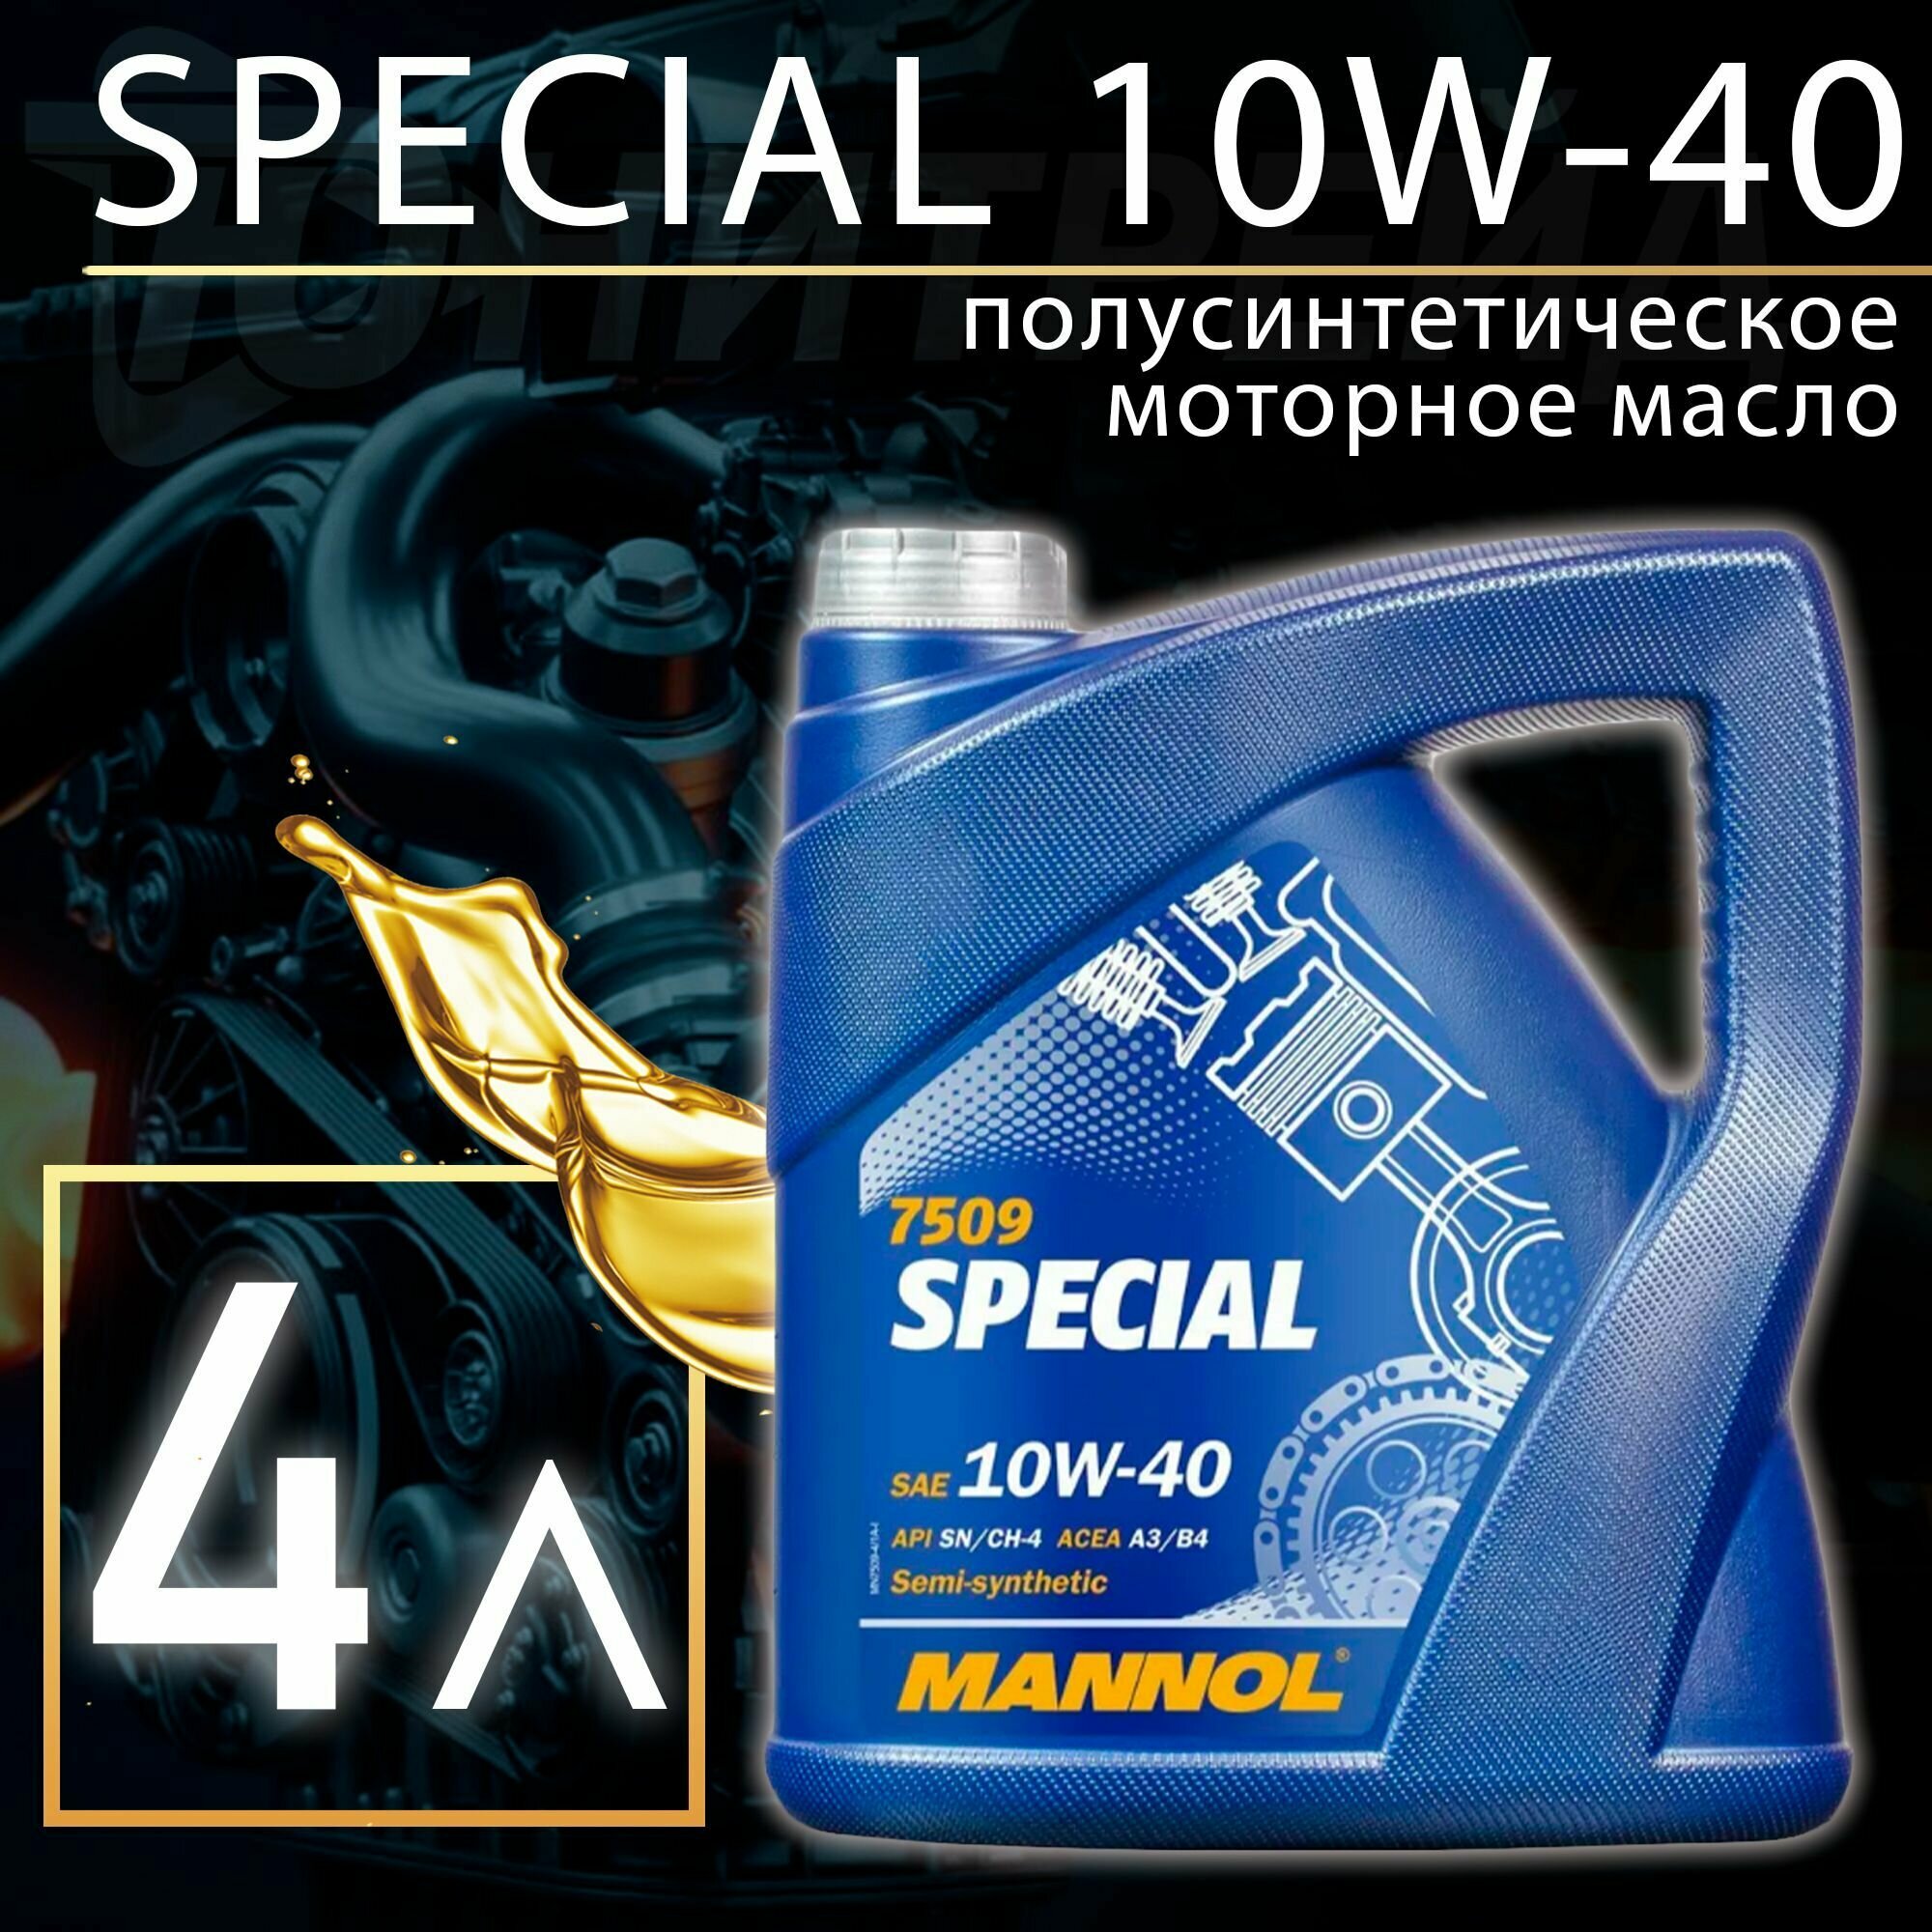 Полусинтетическое моторное масло Mannol Special 10W-40